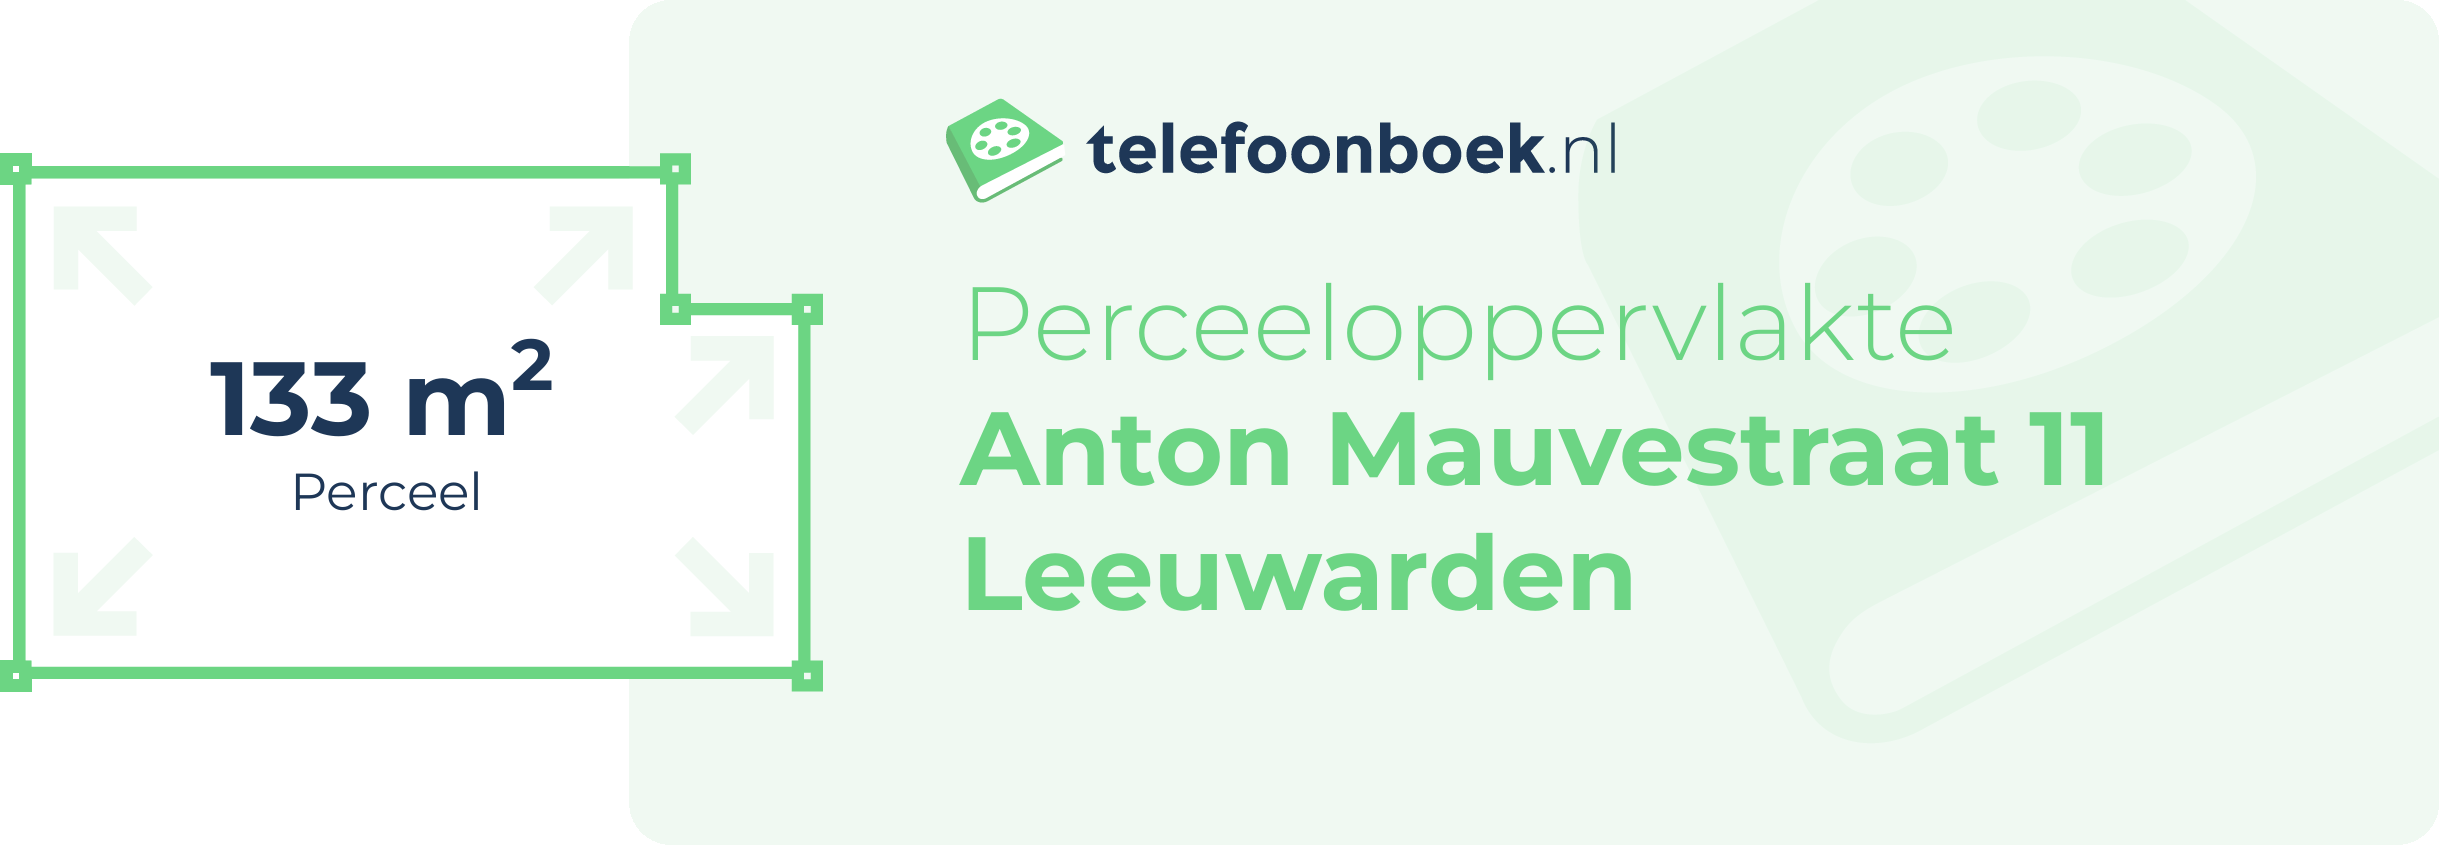 Perceeloppervlakte Anton Mauvestraat 11 Leeuwarden